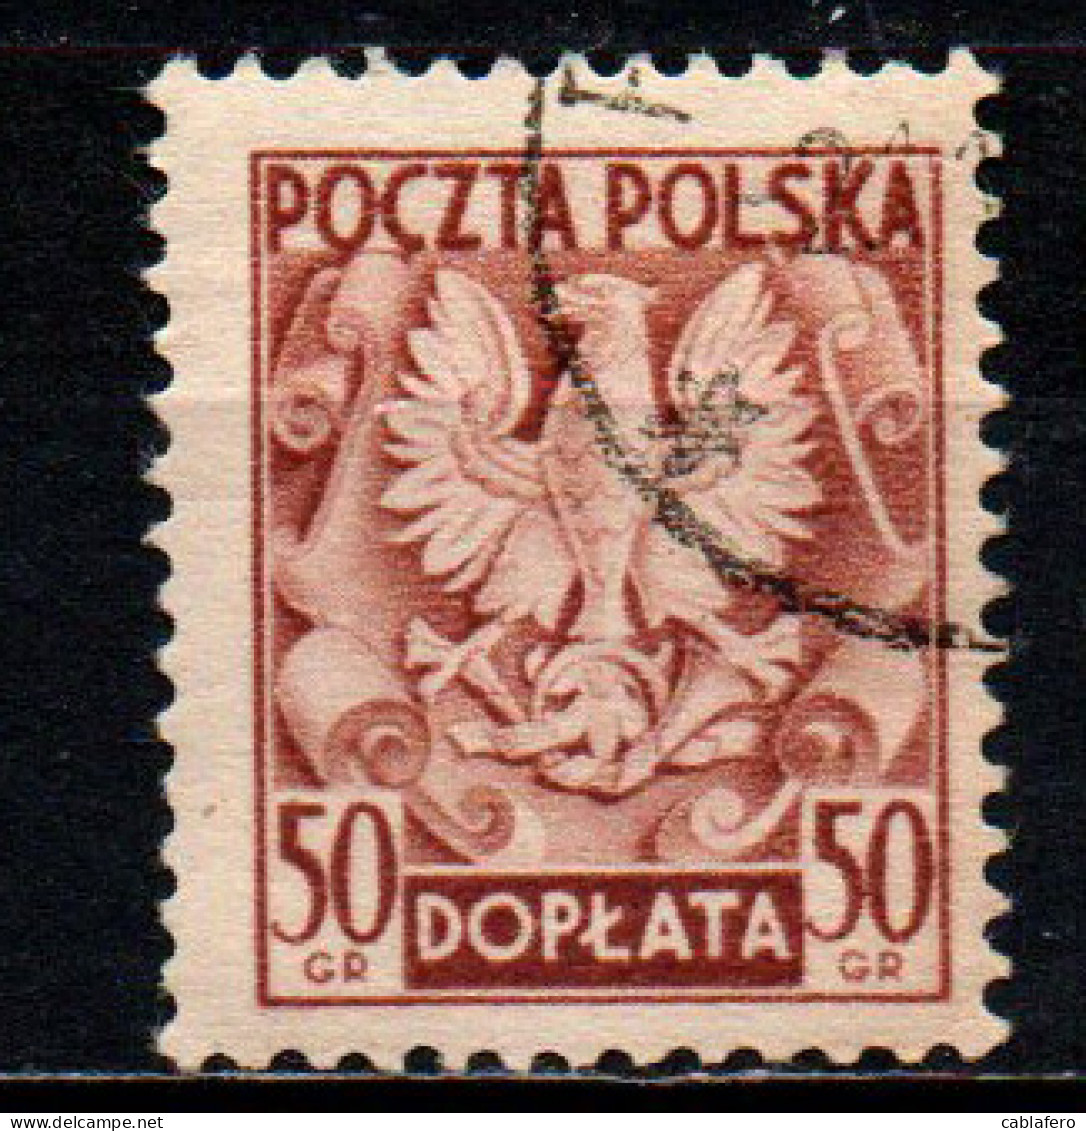 POLONIA - 1950 - Polish Eagle - USATO - Strafport